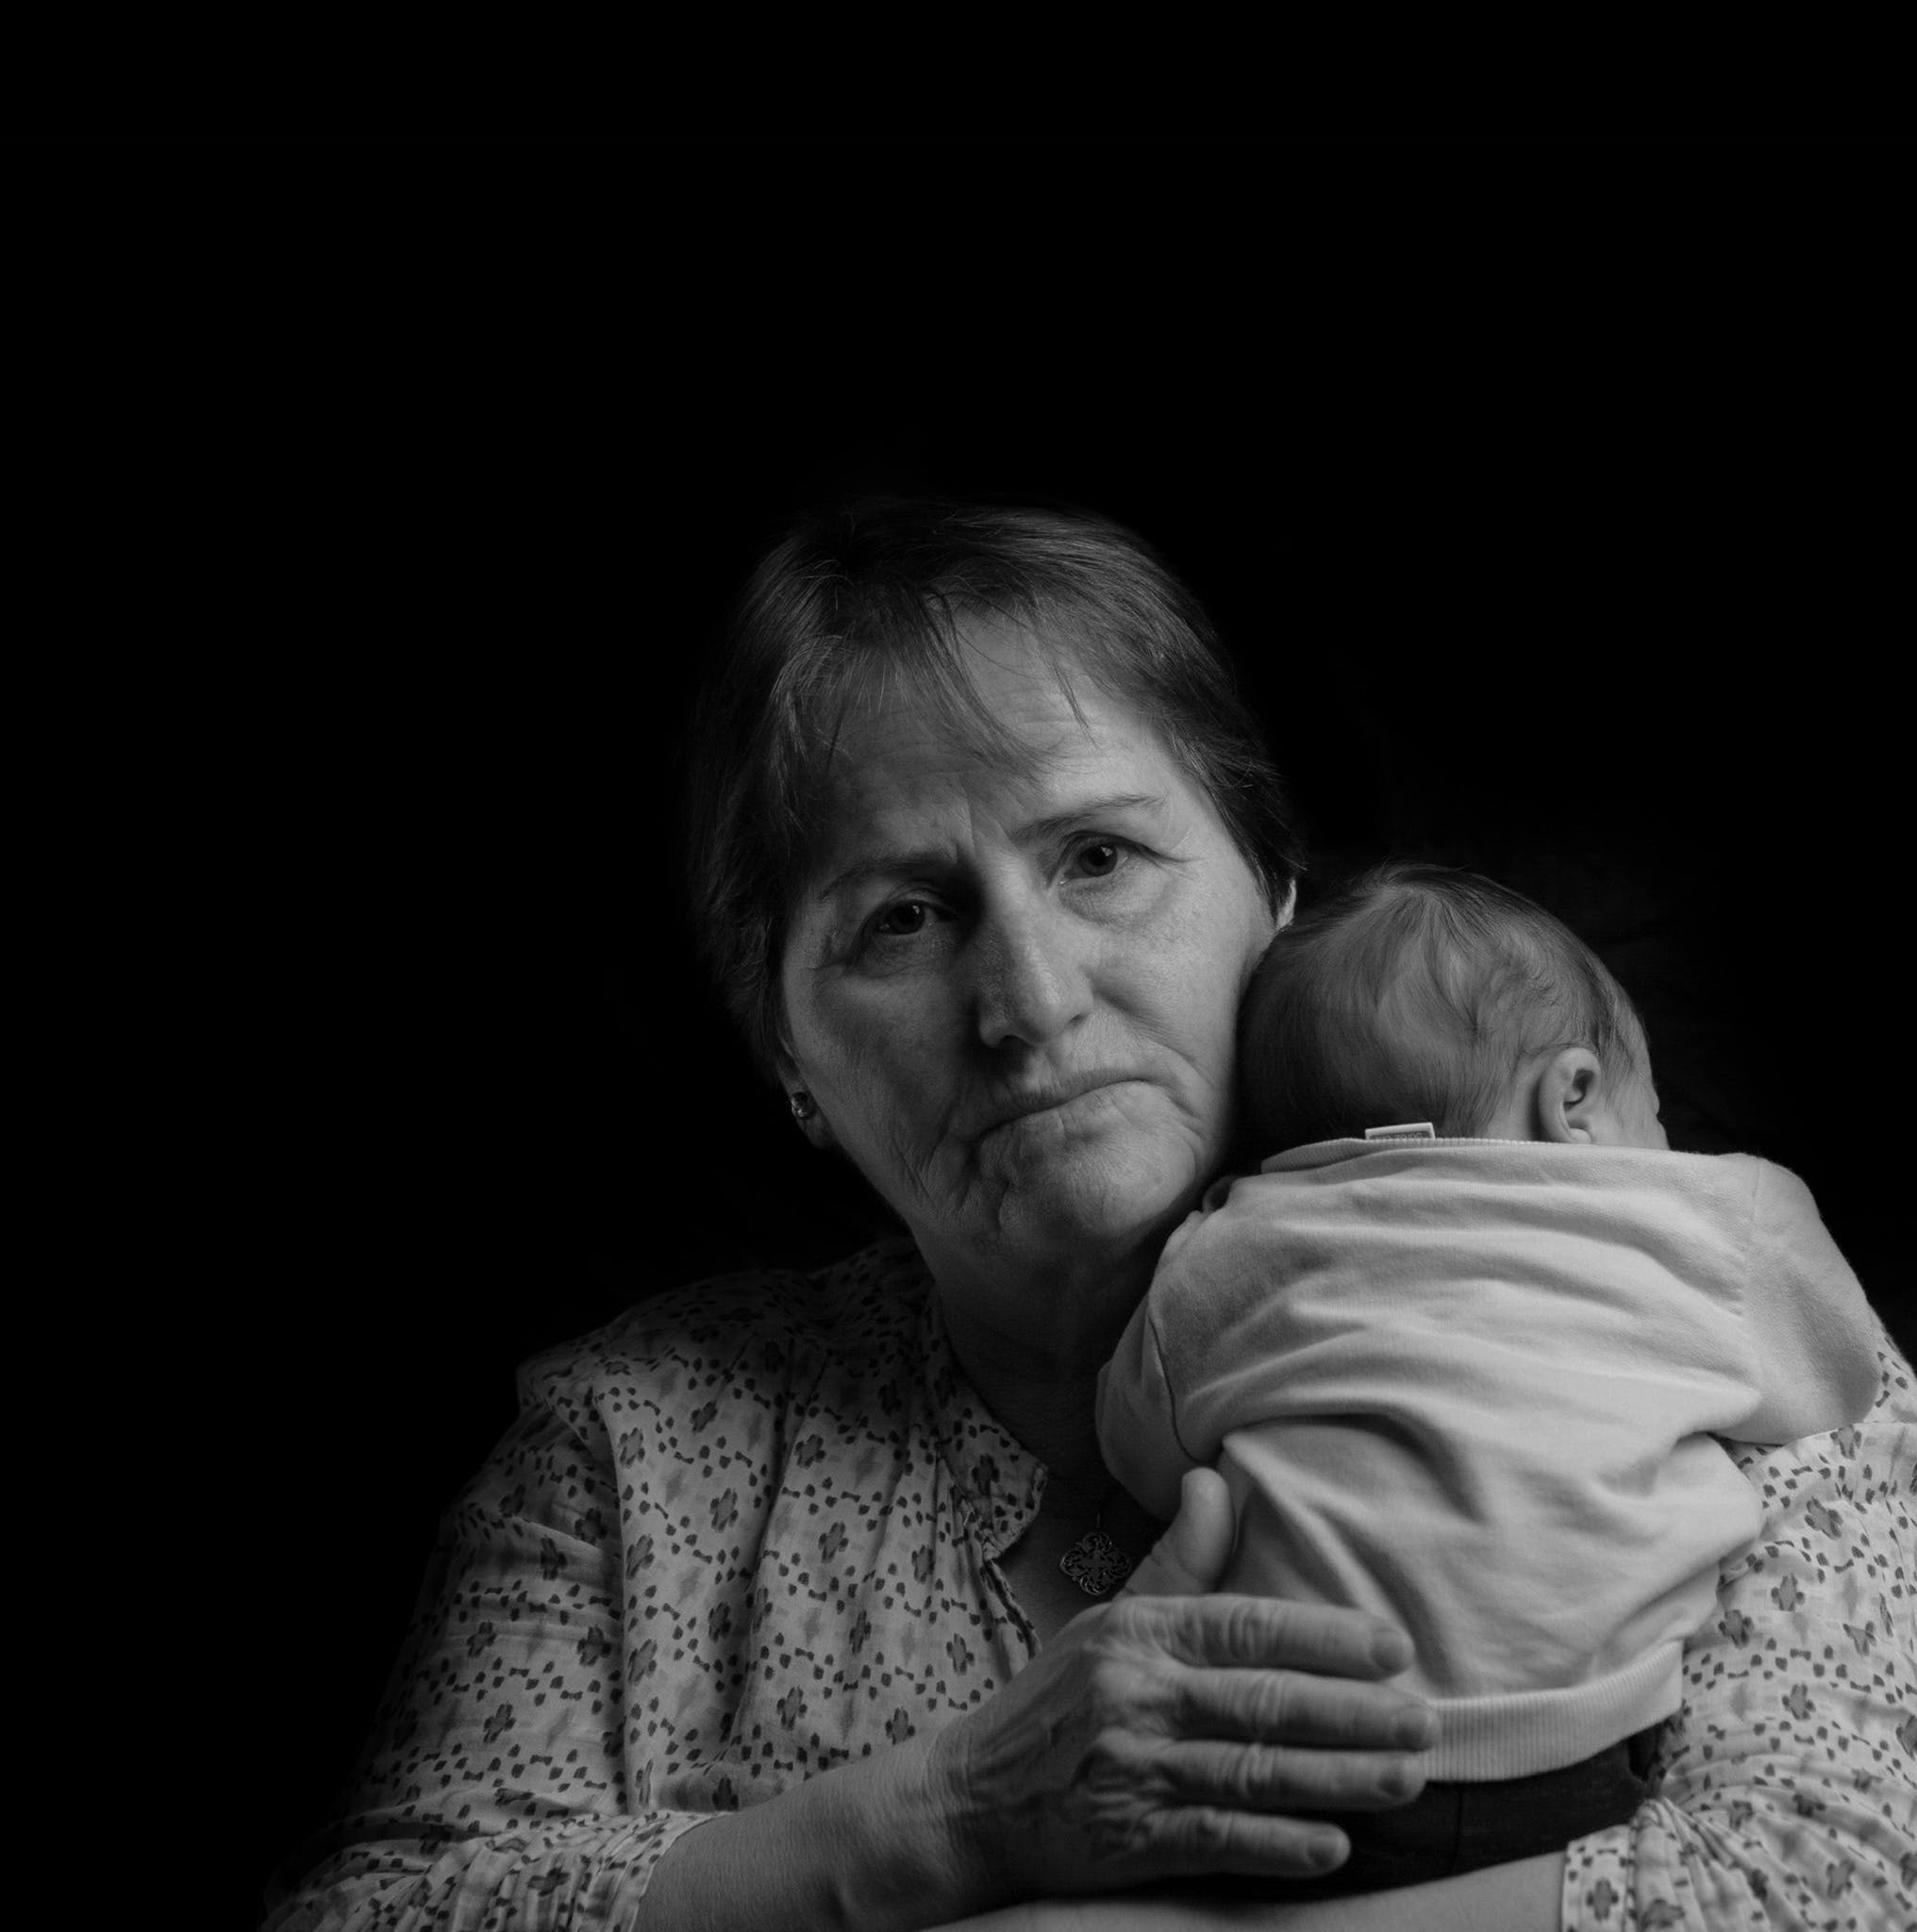 Eine Frau hält ein Baby | Quelle: Pexels